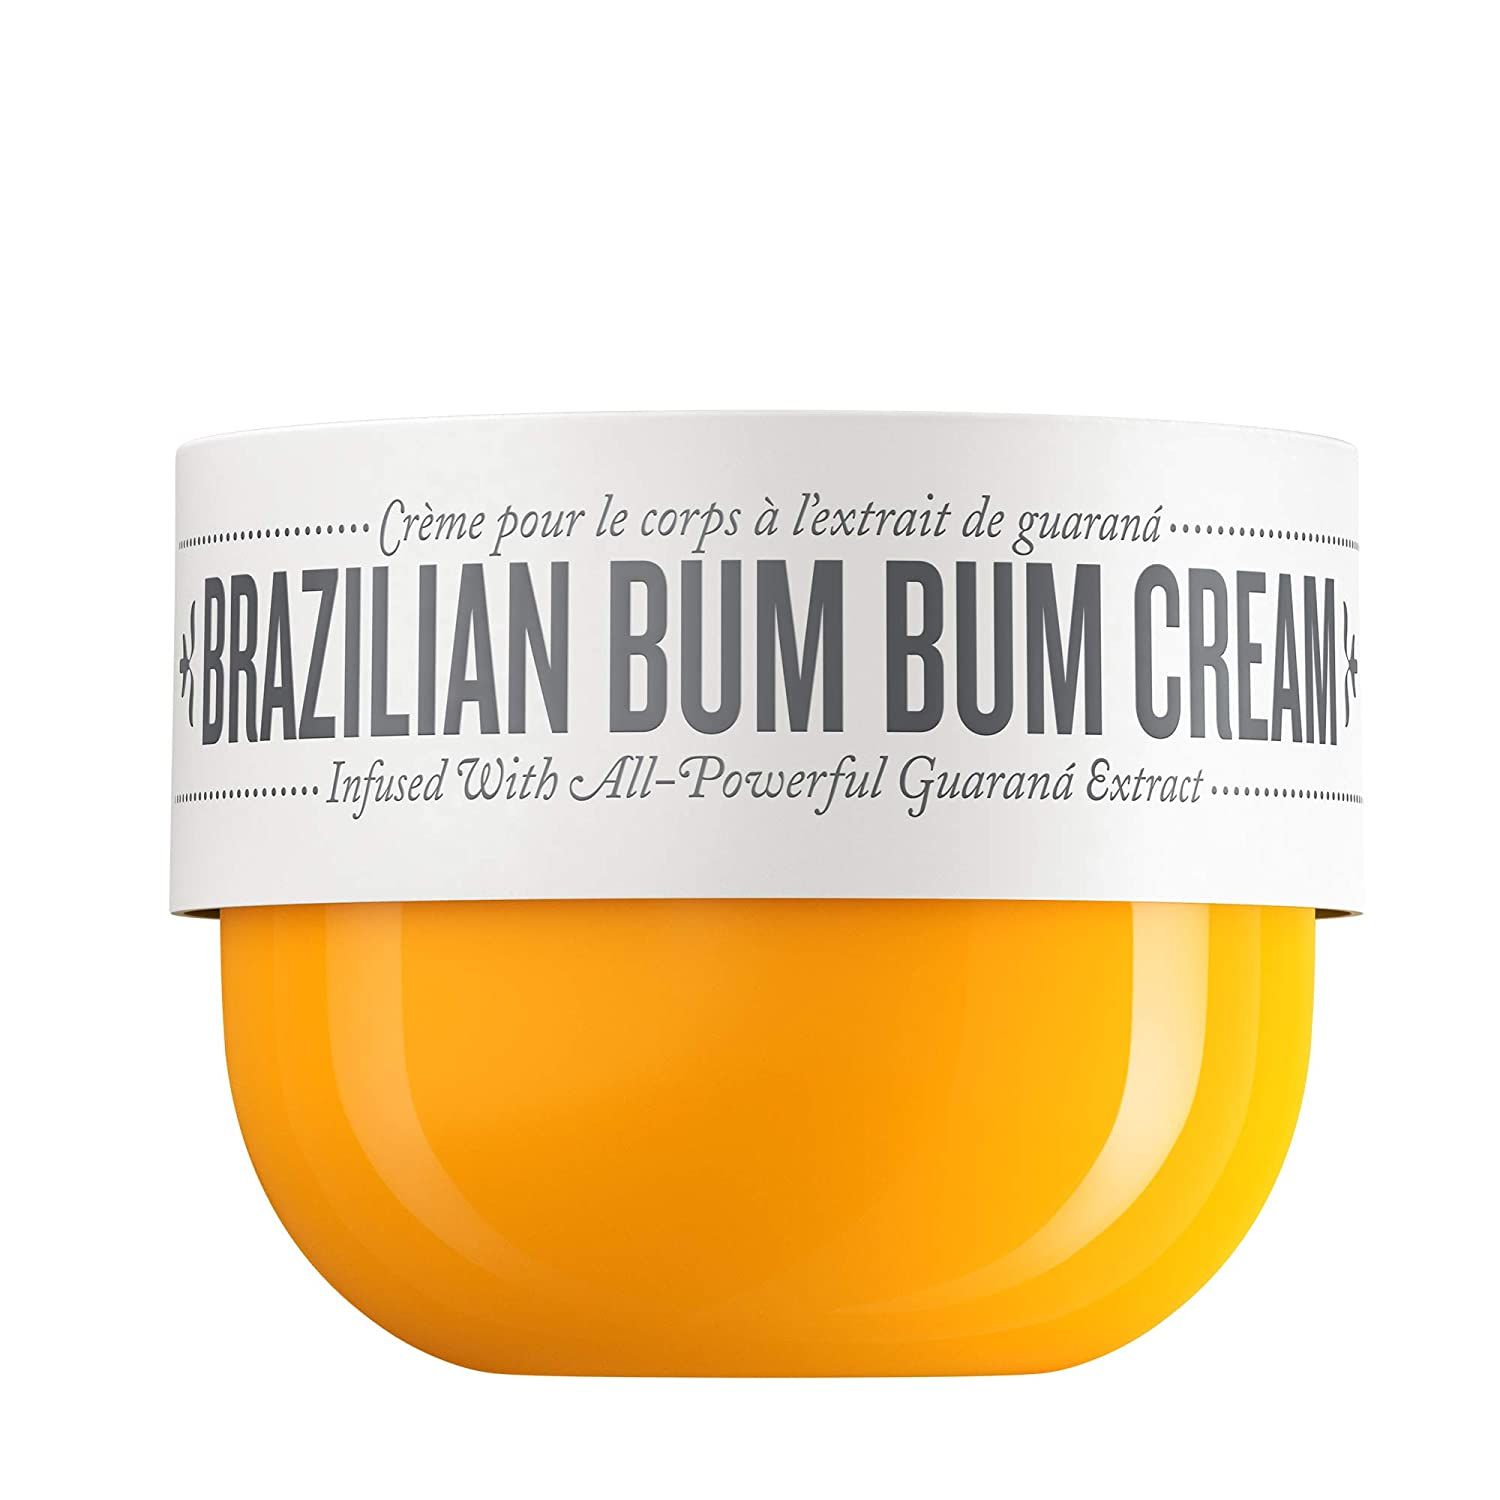 mejores-humectantes-corporales-brazilian-bum-bum-cream